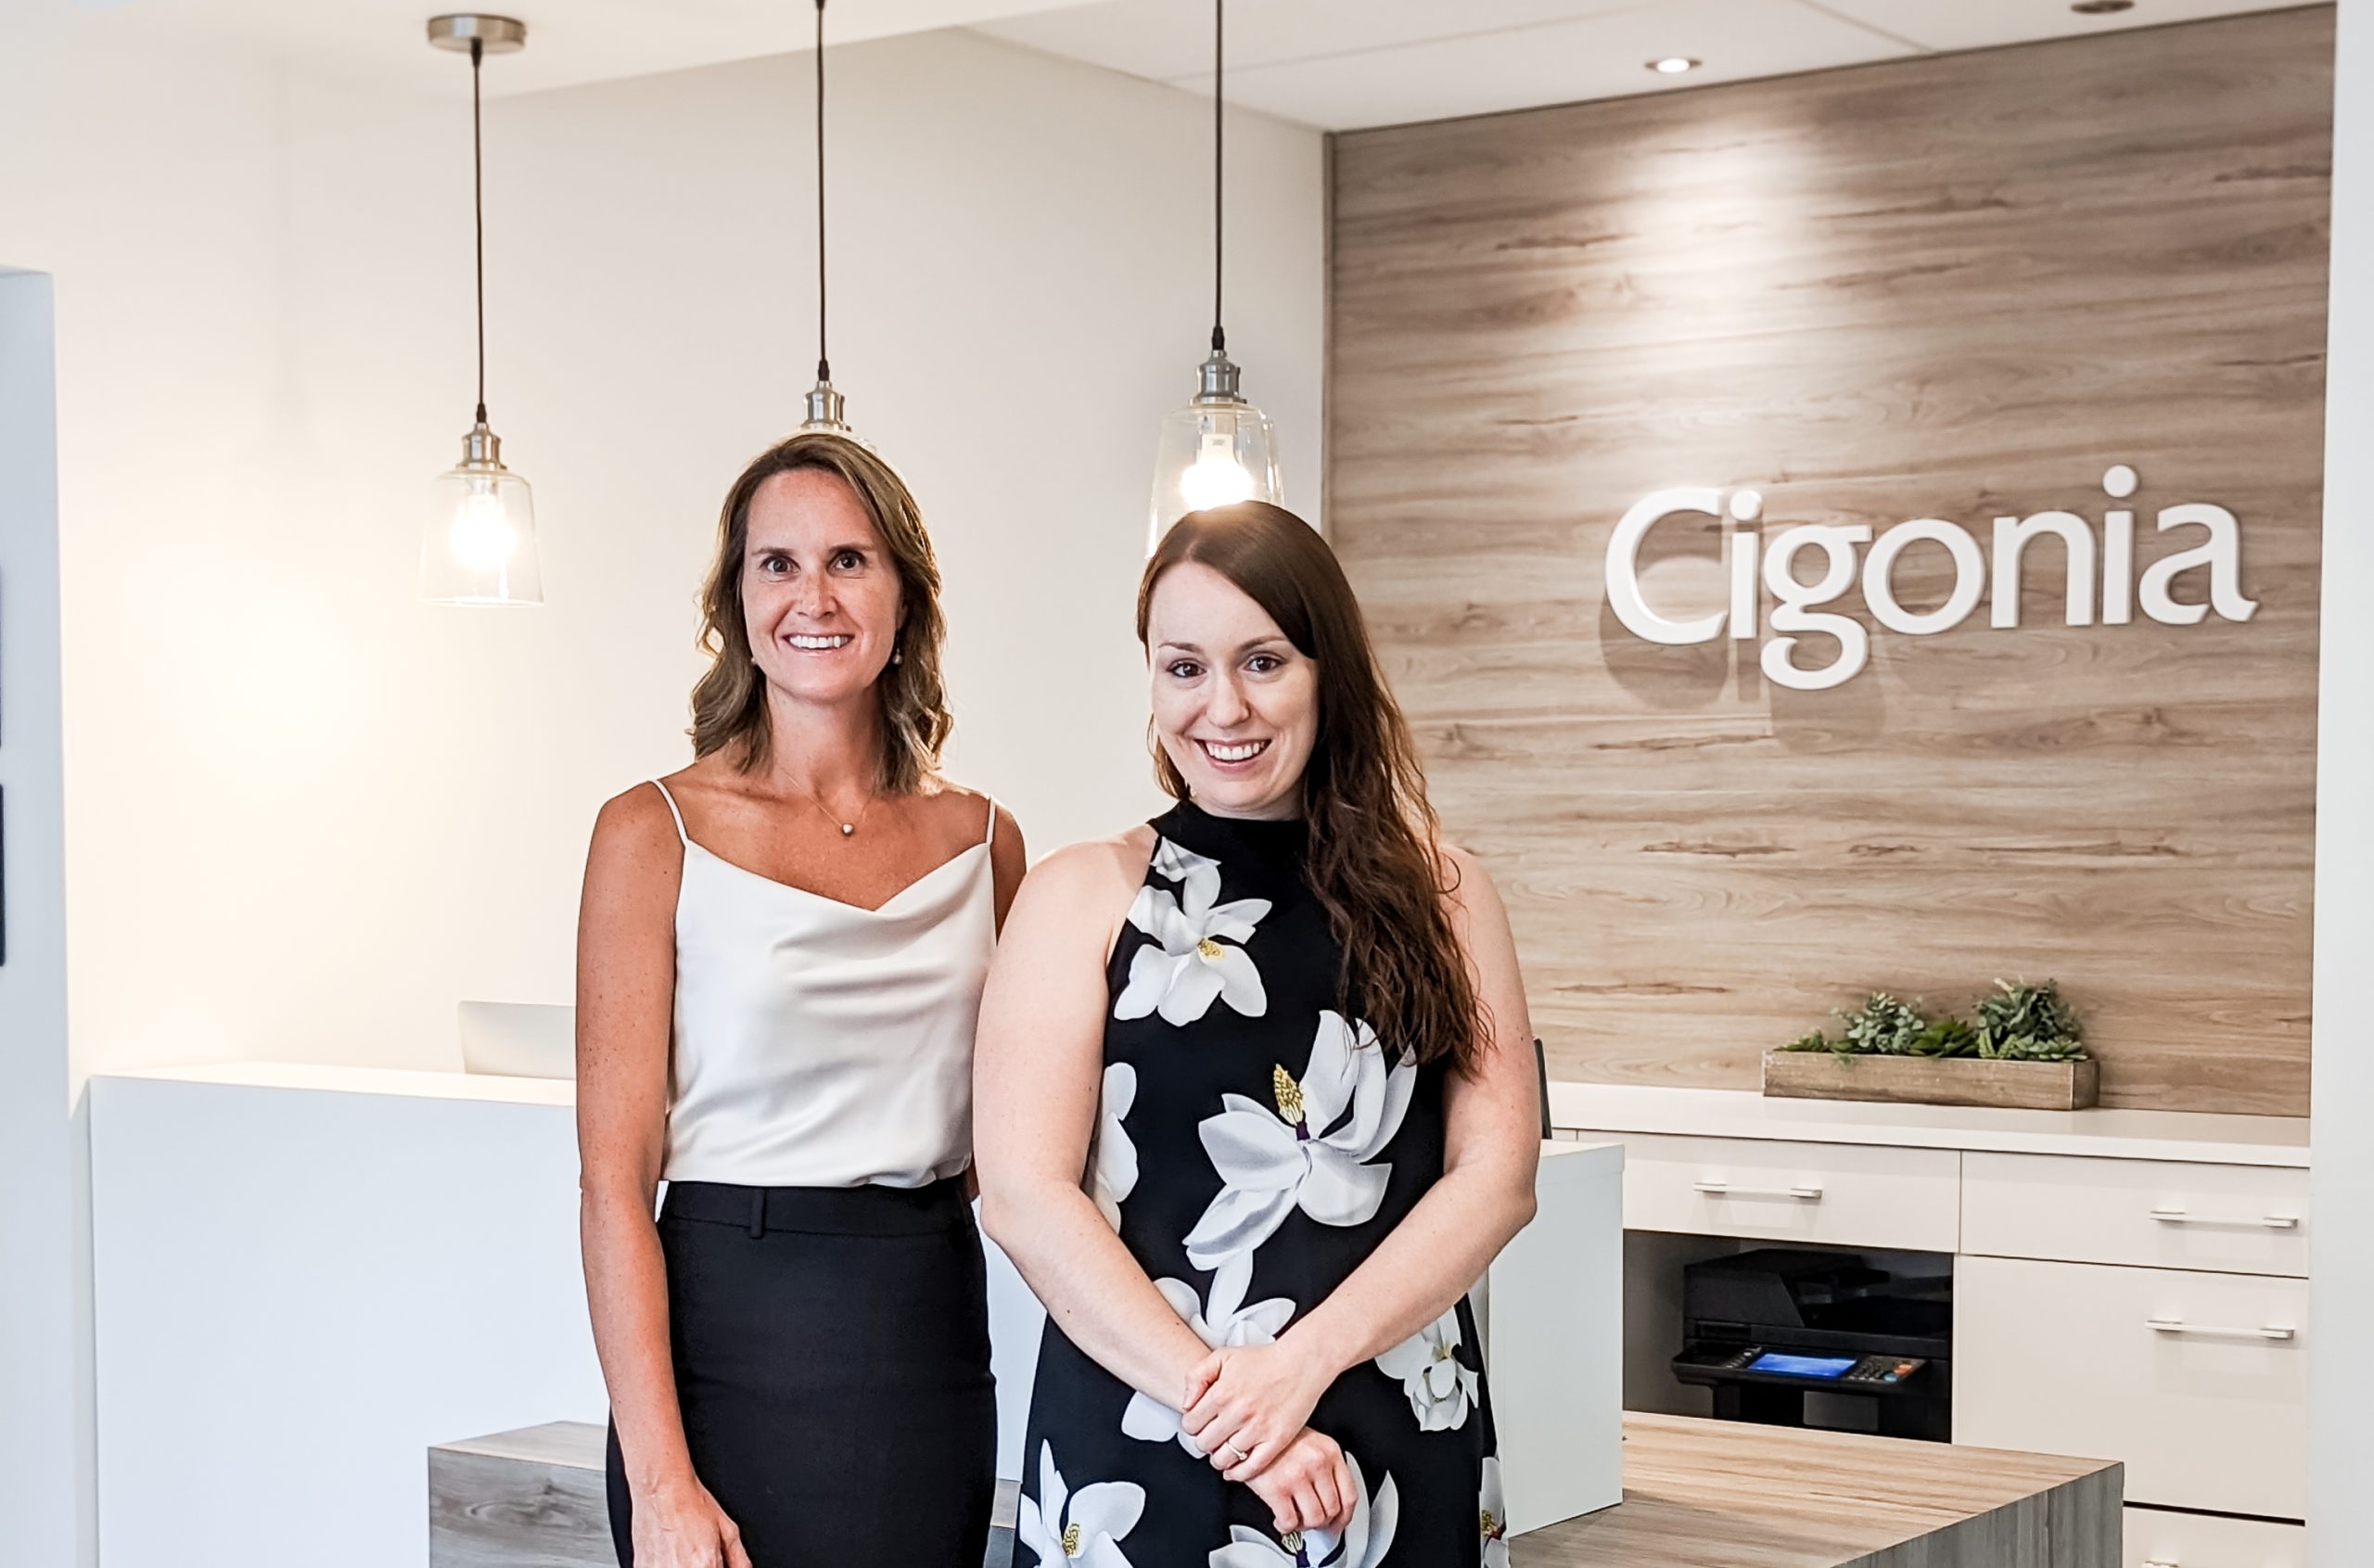 Cigonia | Centre d'expertise en rééducation périnéale et pédiatrique | Sherbrooke | Une nouvelle clinique Cigonia ouvrira ses portes à Granby dès septembre 2022!  